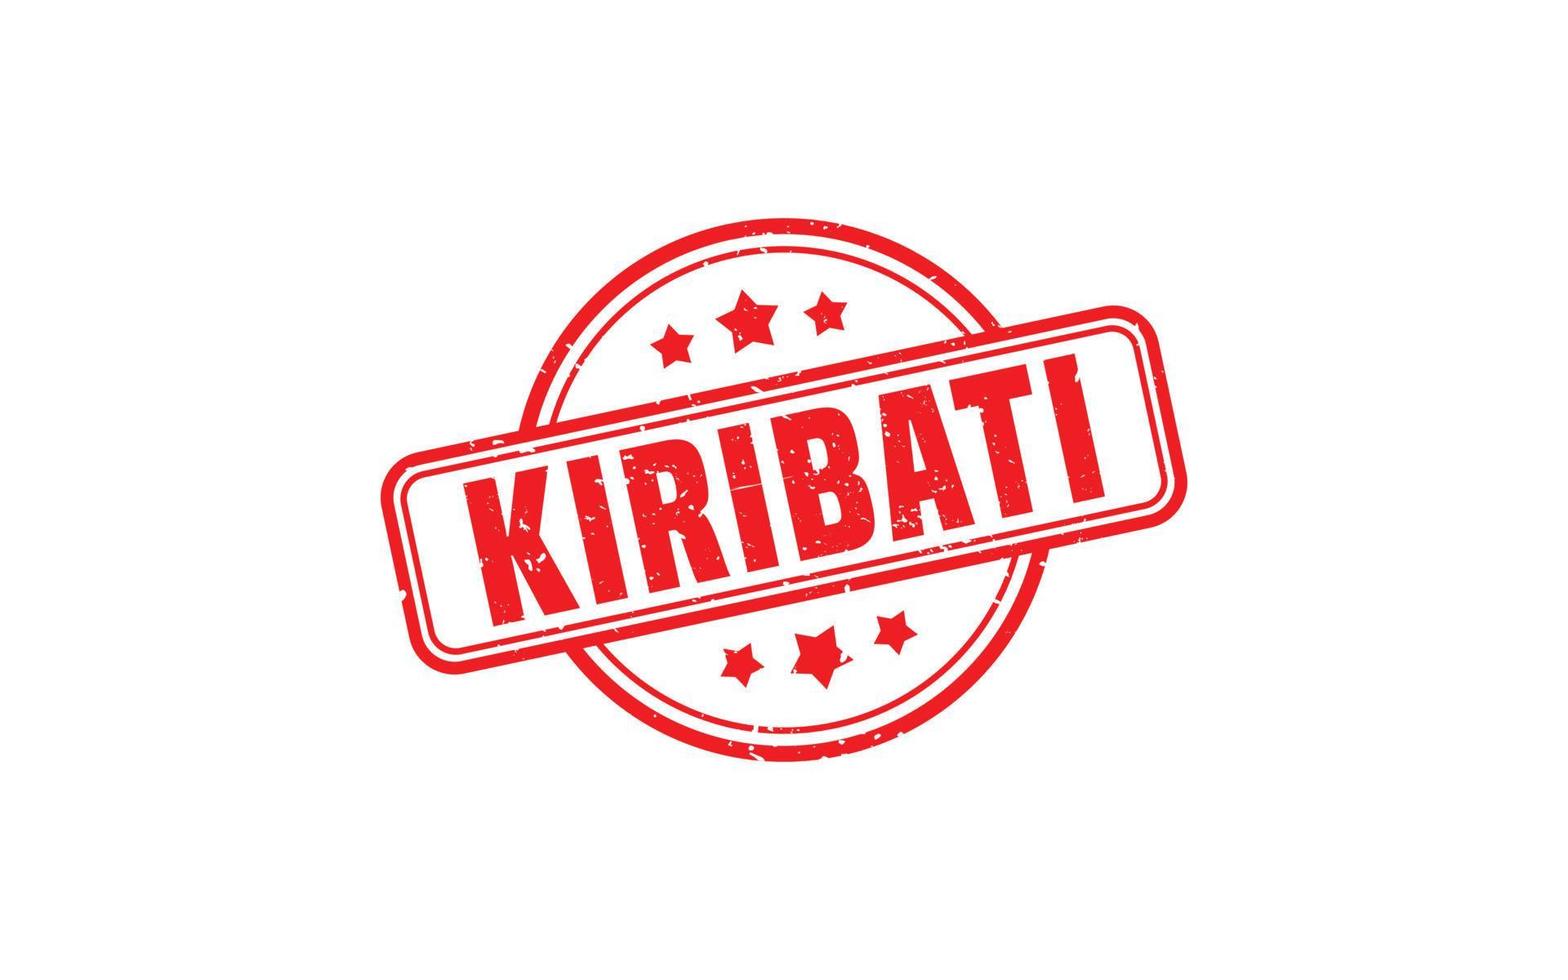 kiribati Stempelgummi mit Grunge-Stil auf weißem Hintergrund vektor